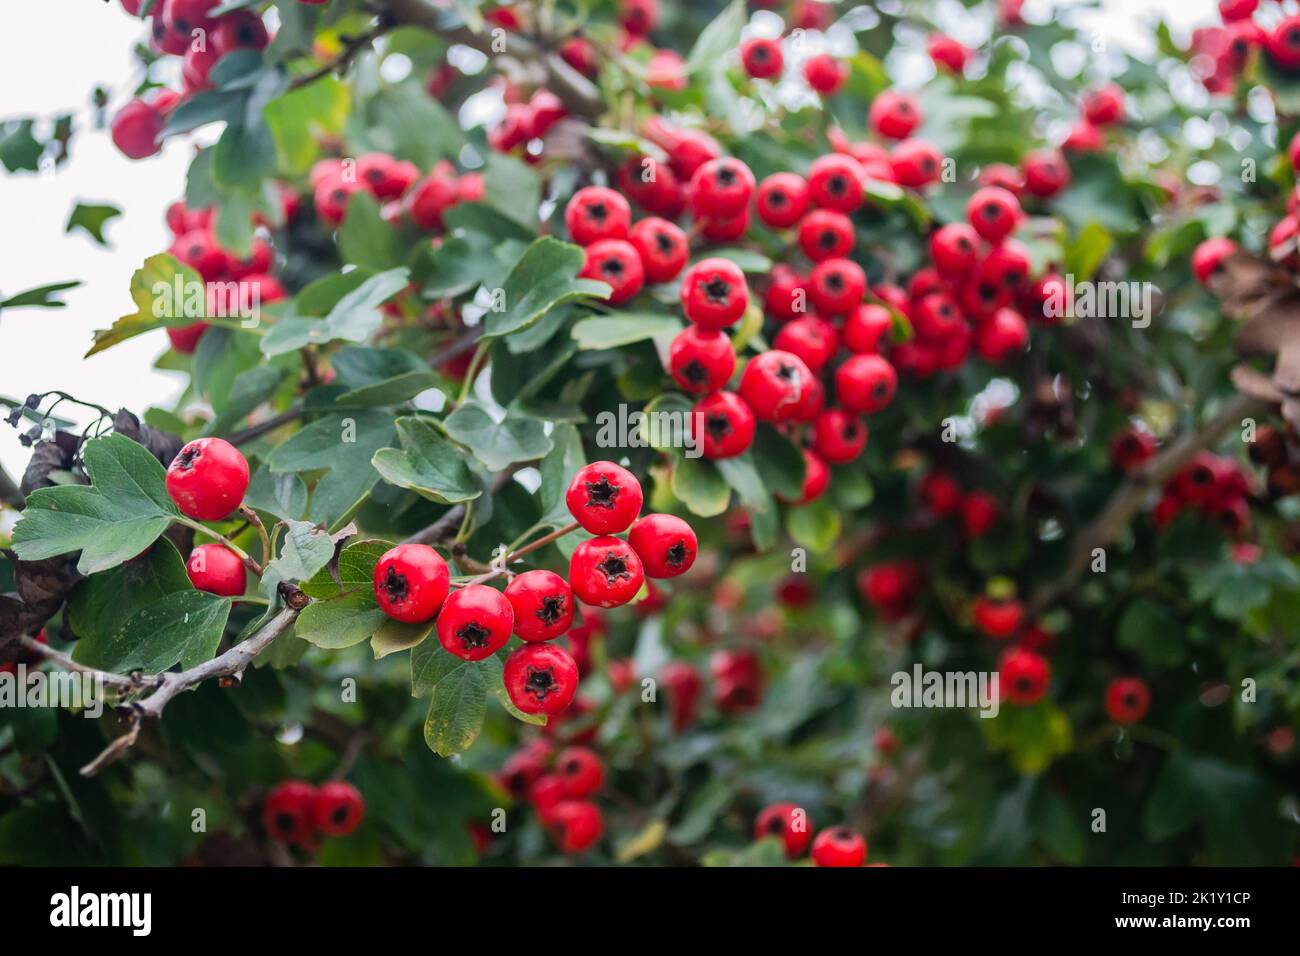 Crataegus monogyna albero con tanti frutti. Crataegus coccinea frutti rossi sani e ornamentali, bellissimi rami di albero con foglie verdi. Foto Stock